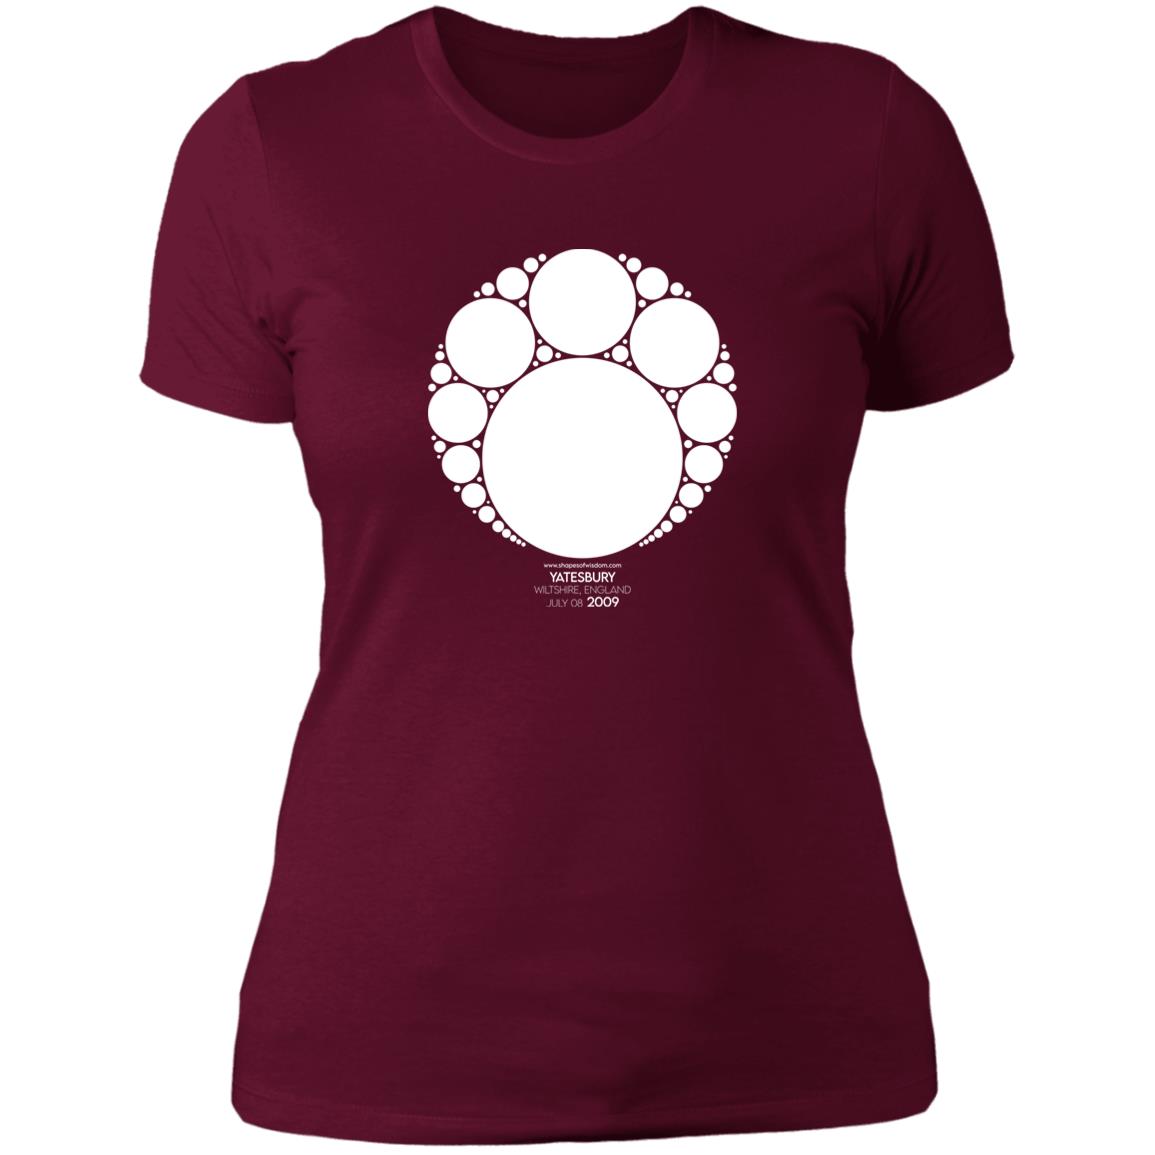 Crop Circle Basic T-Shirt - Yatesbury 6